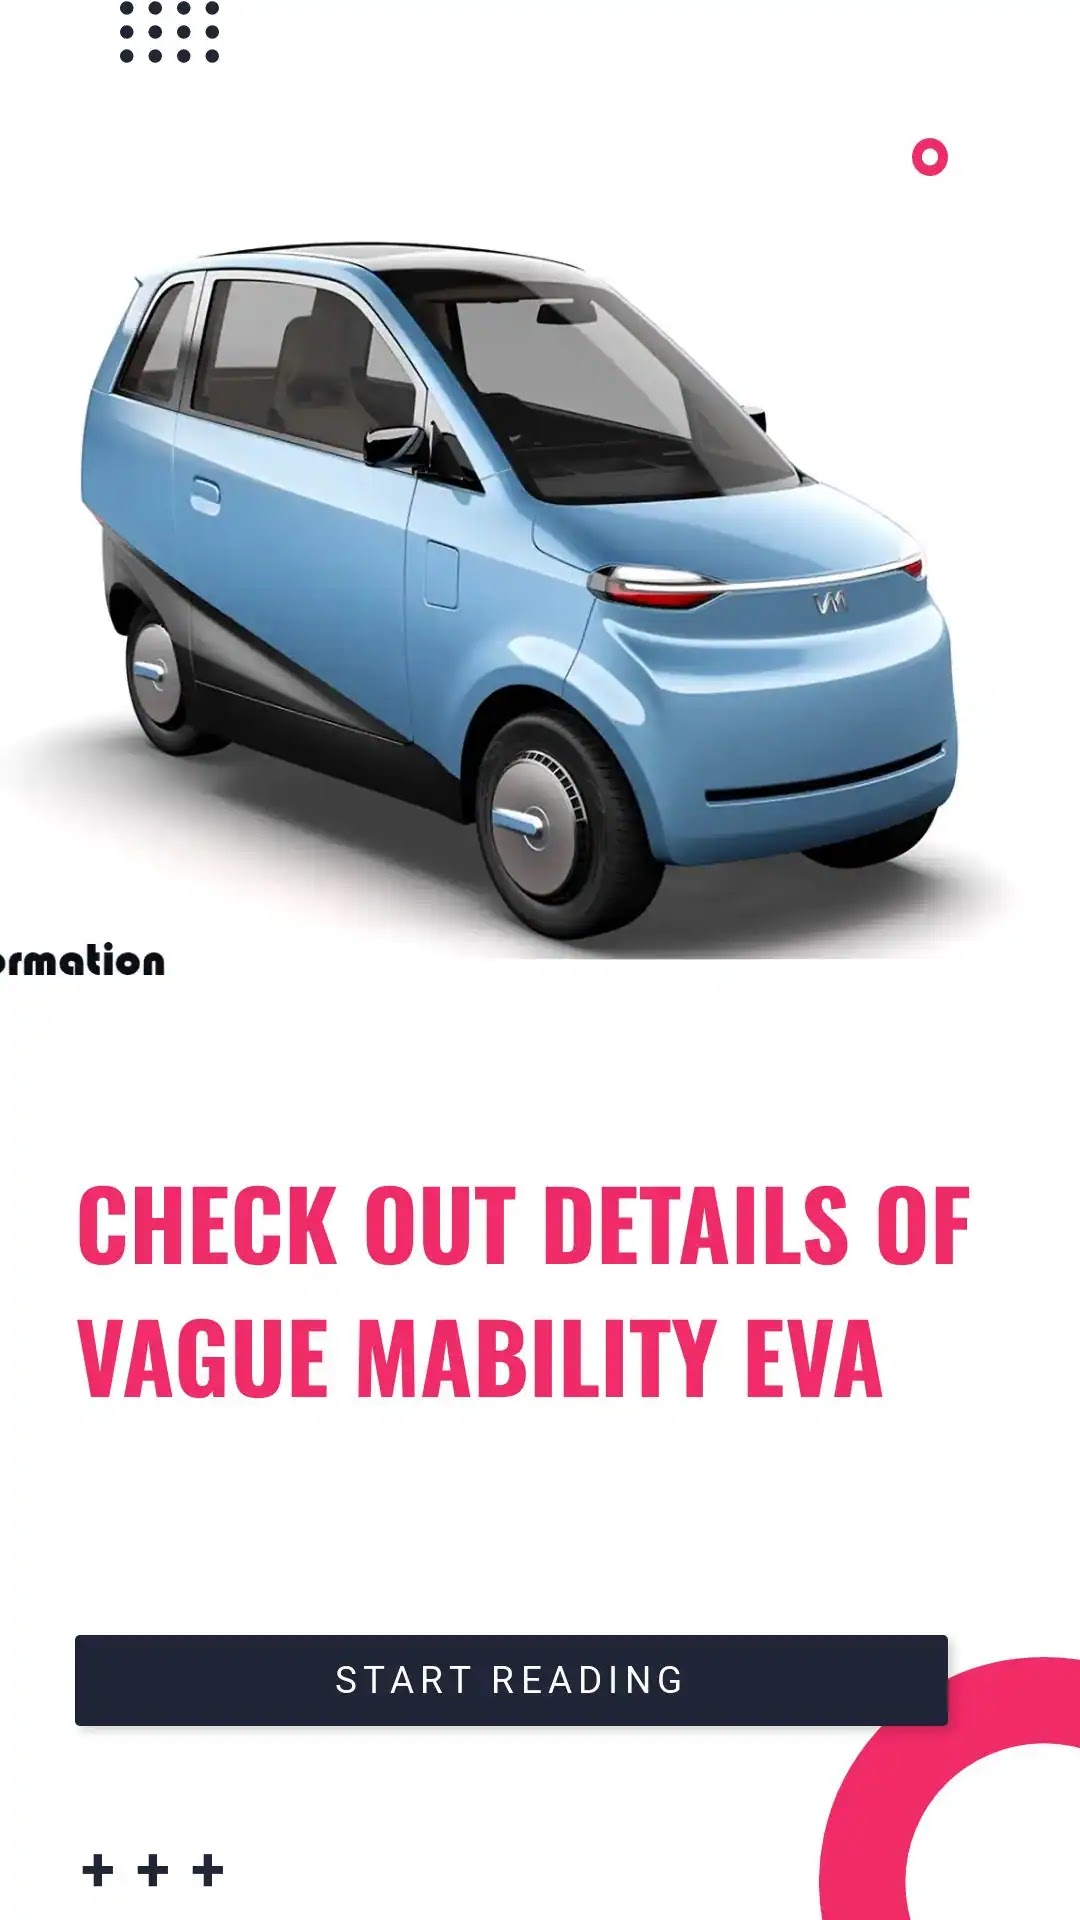 Vague Mobility EVA